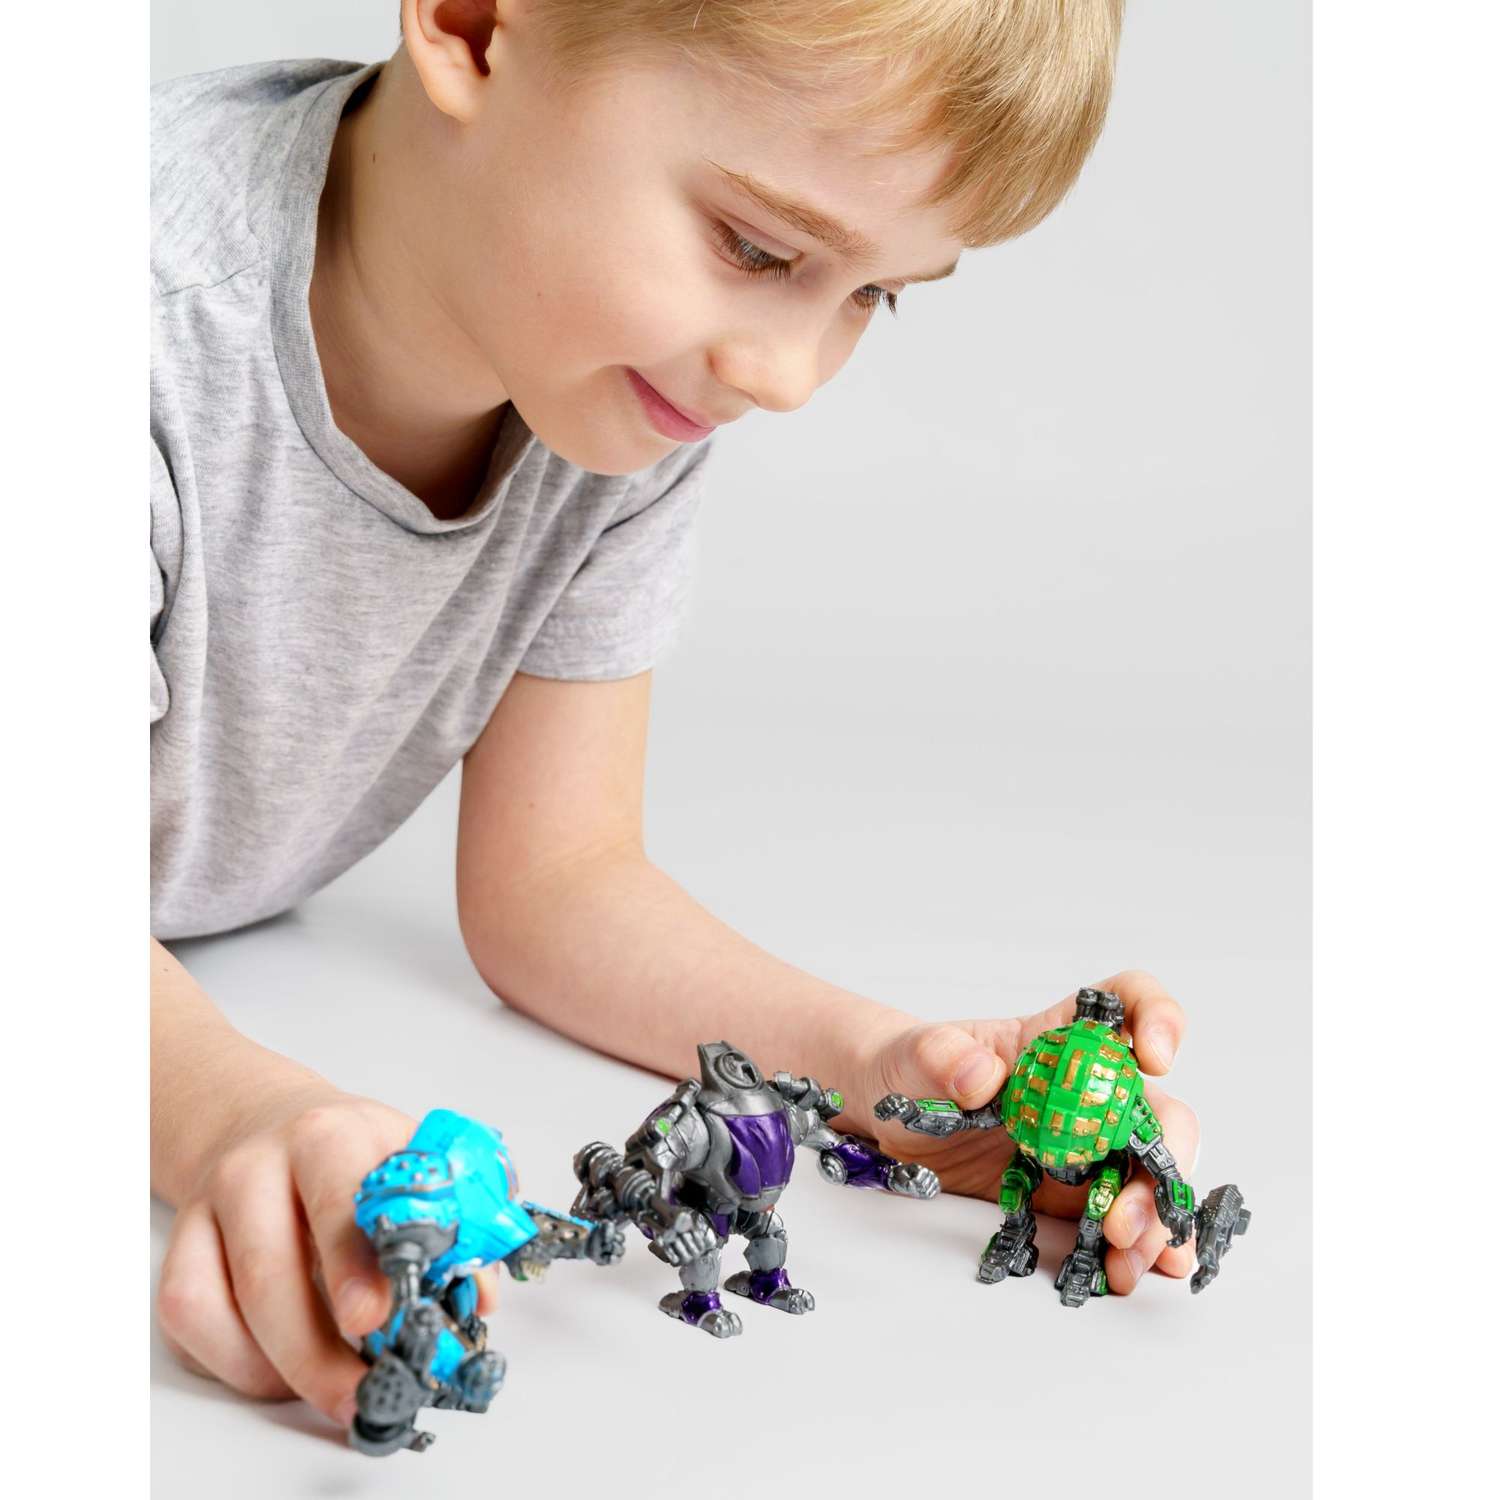 Роботы CyberCode 3 фигурки игрушки для детей развивающие пластиковые коллекционные интересные. 8см - фото 4